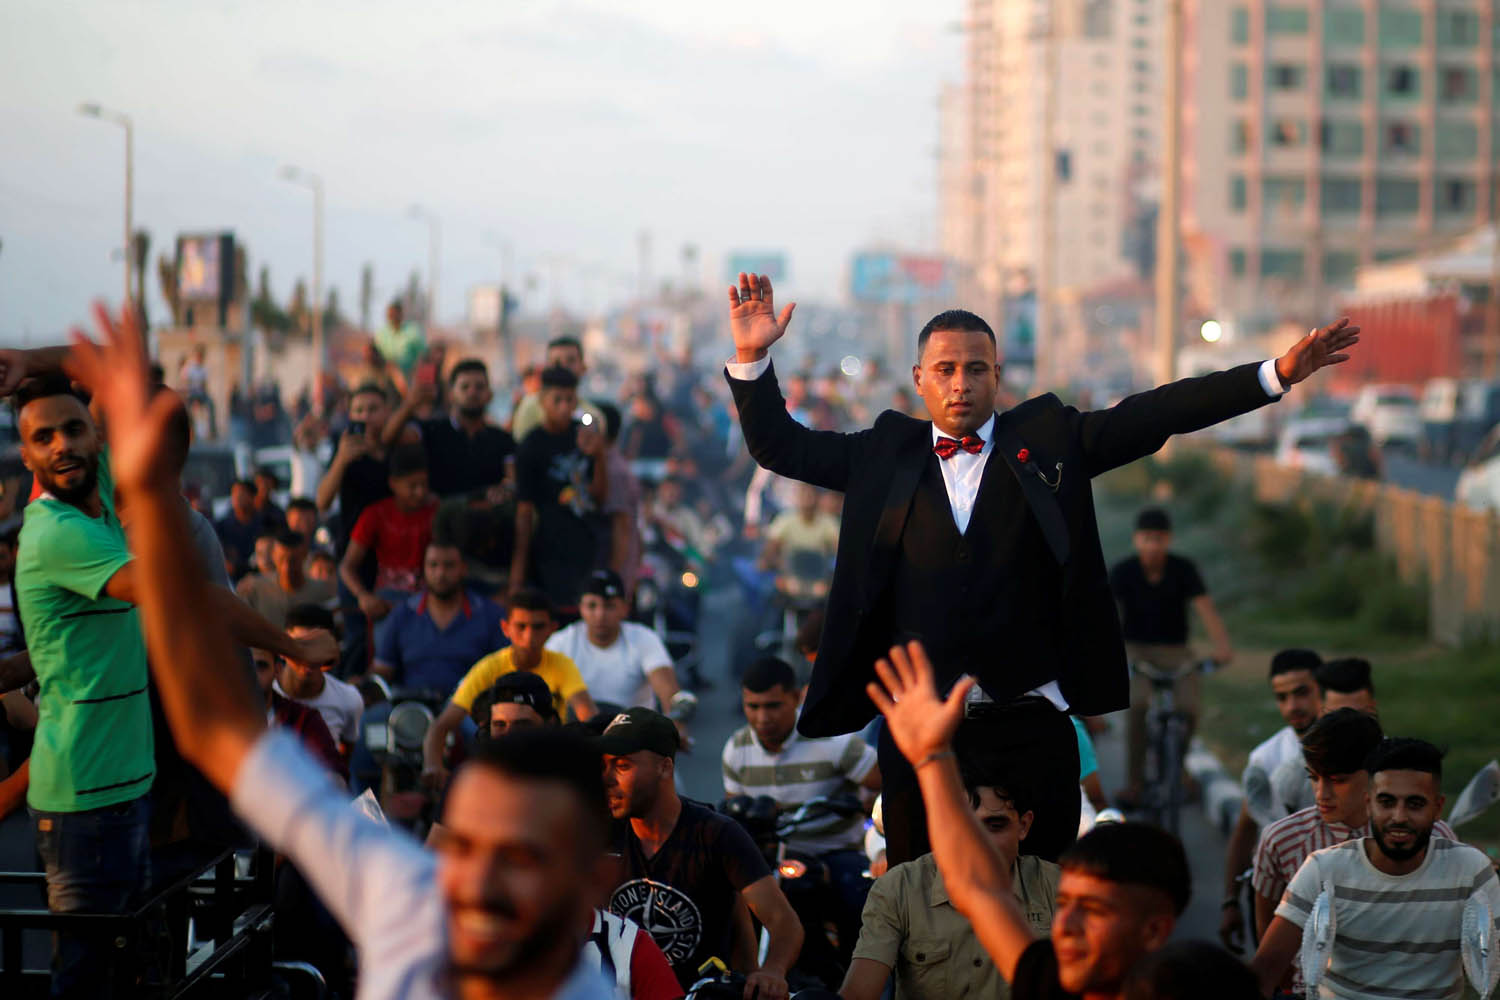 عريس فلسطيني يحتفل بزفافه في غزة